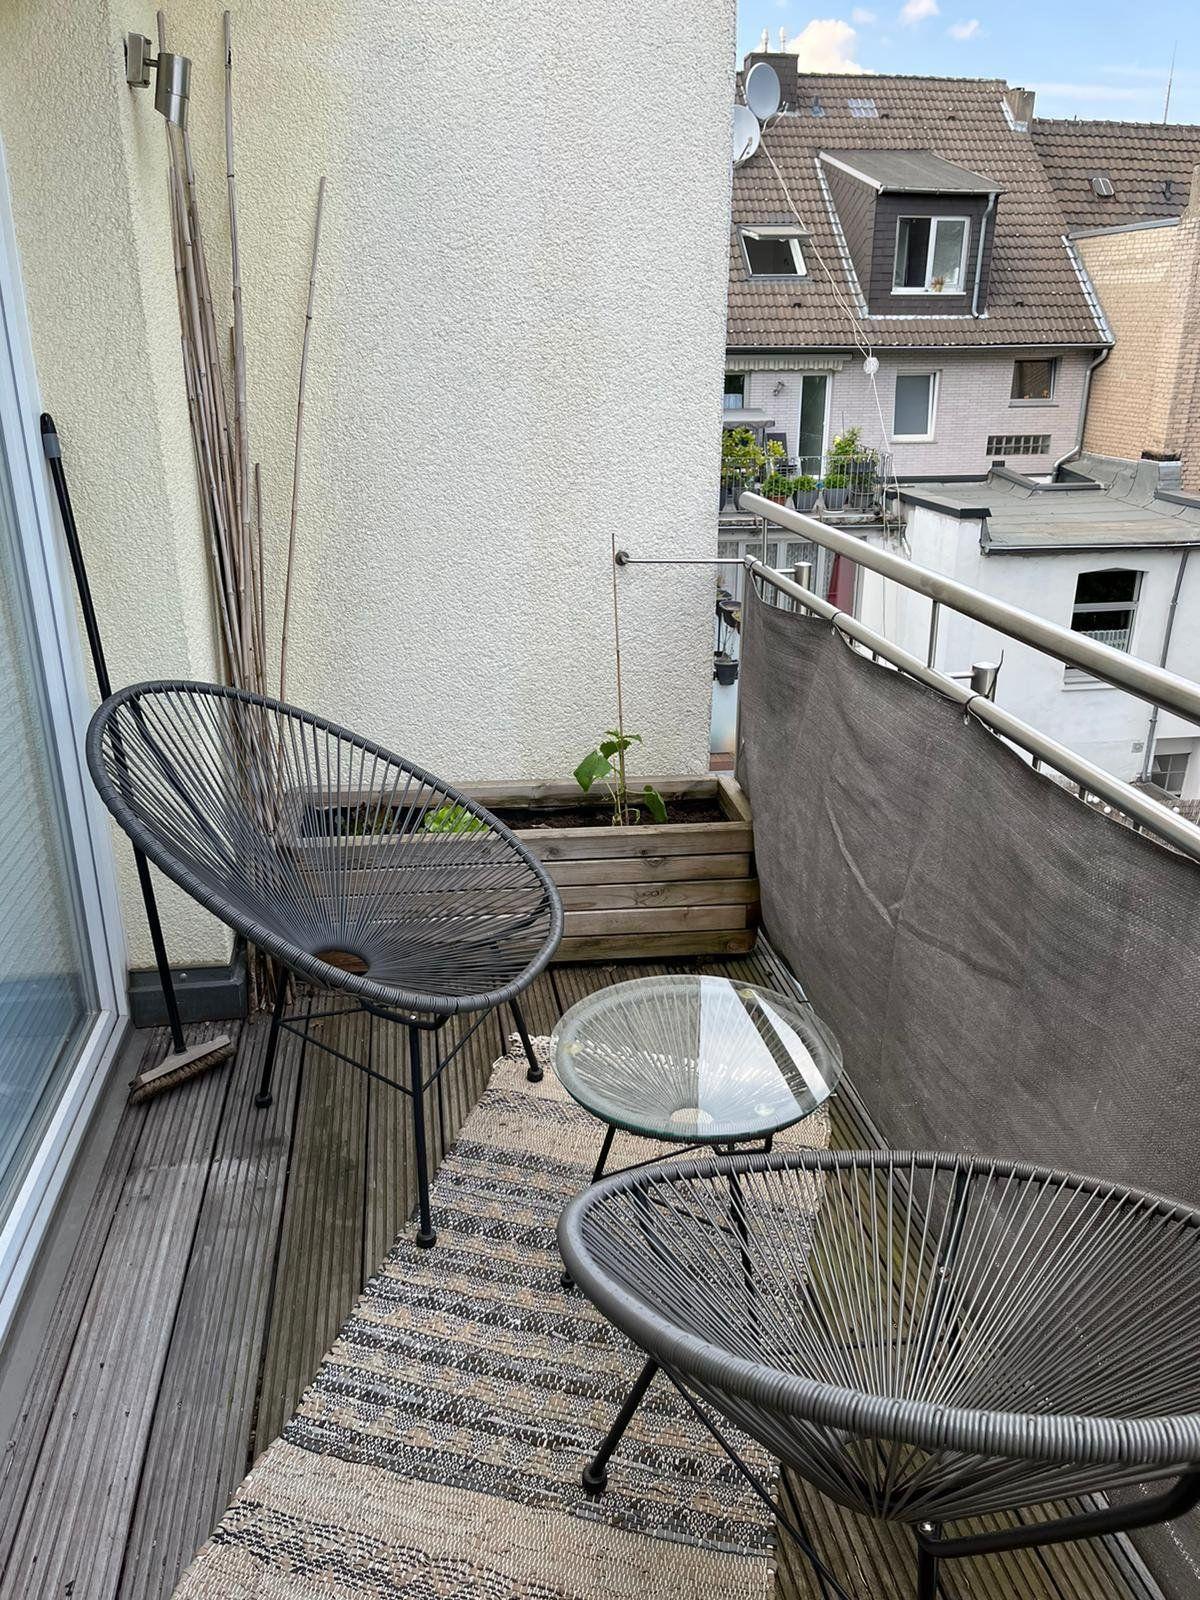 Bild 3: Maisonette-Wohnung in Köln-Nippes mit 2 Balkonen und Dachterrasse